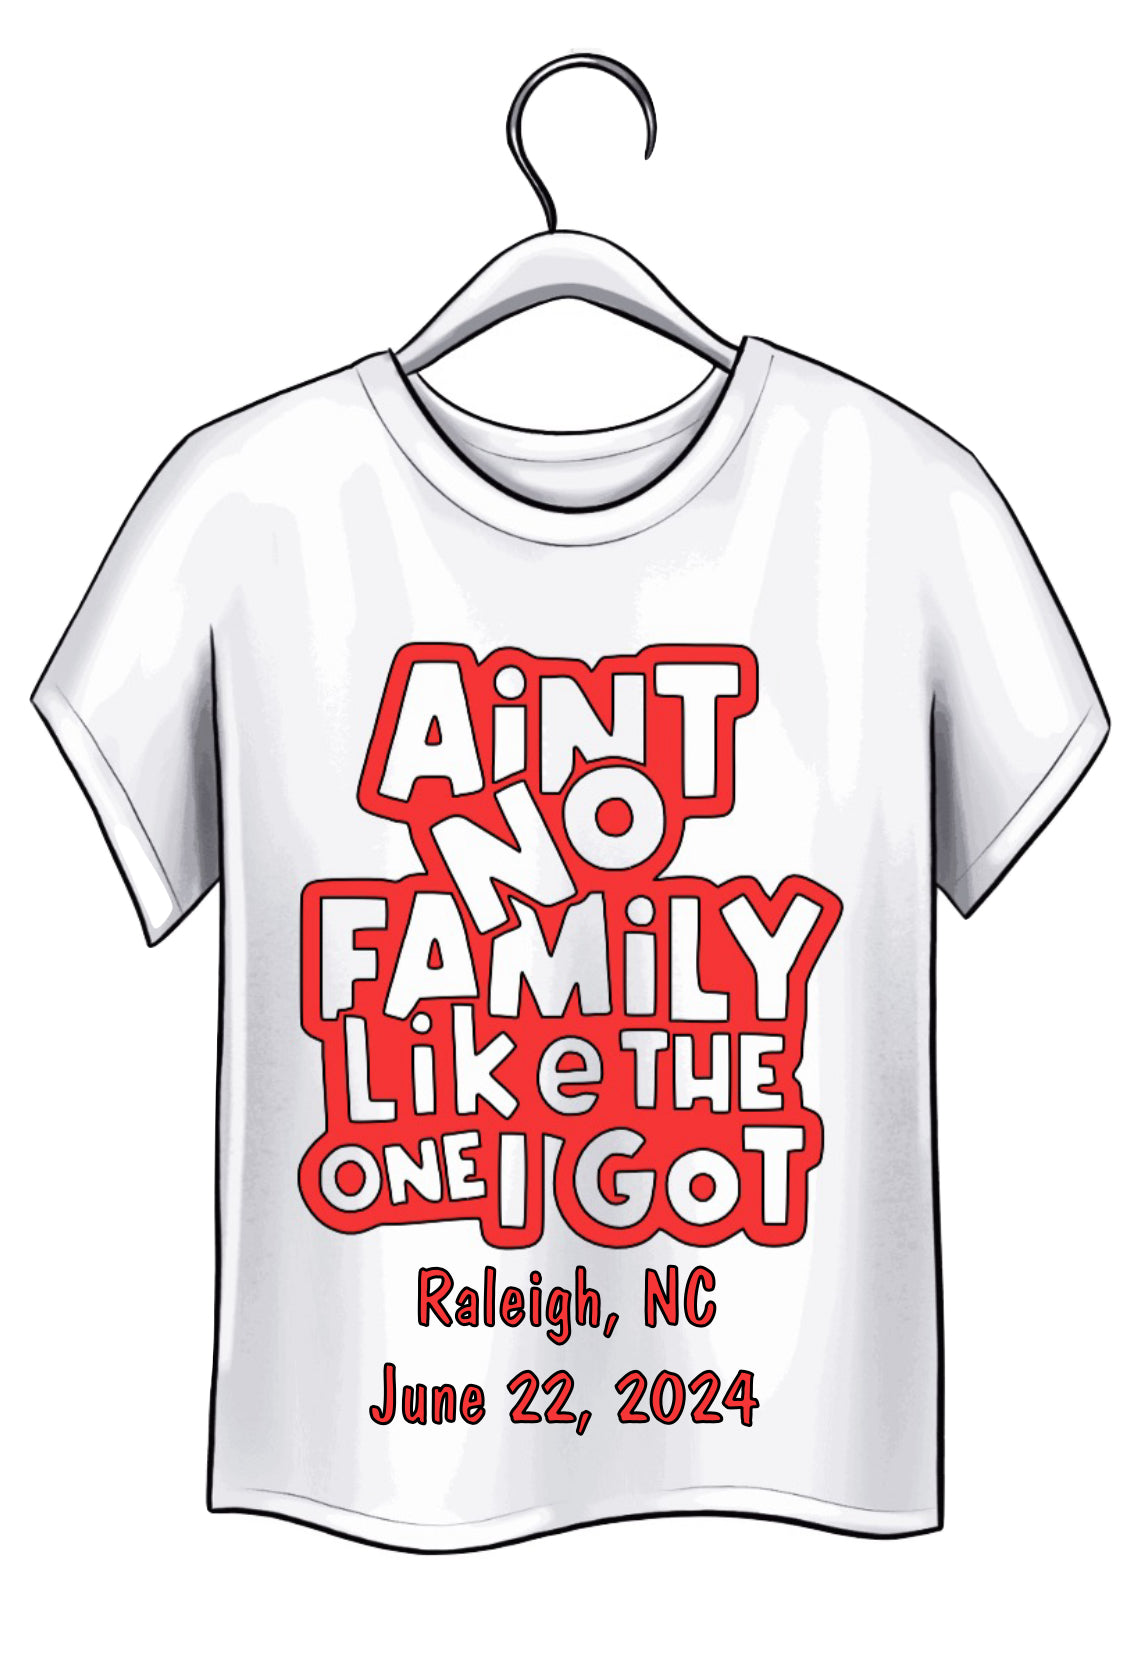 White Family Reunion shirts